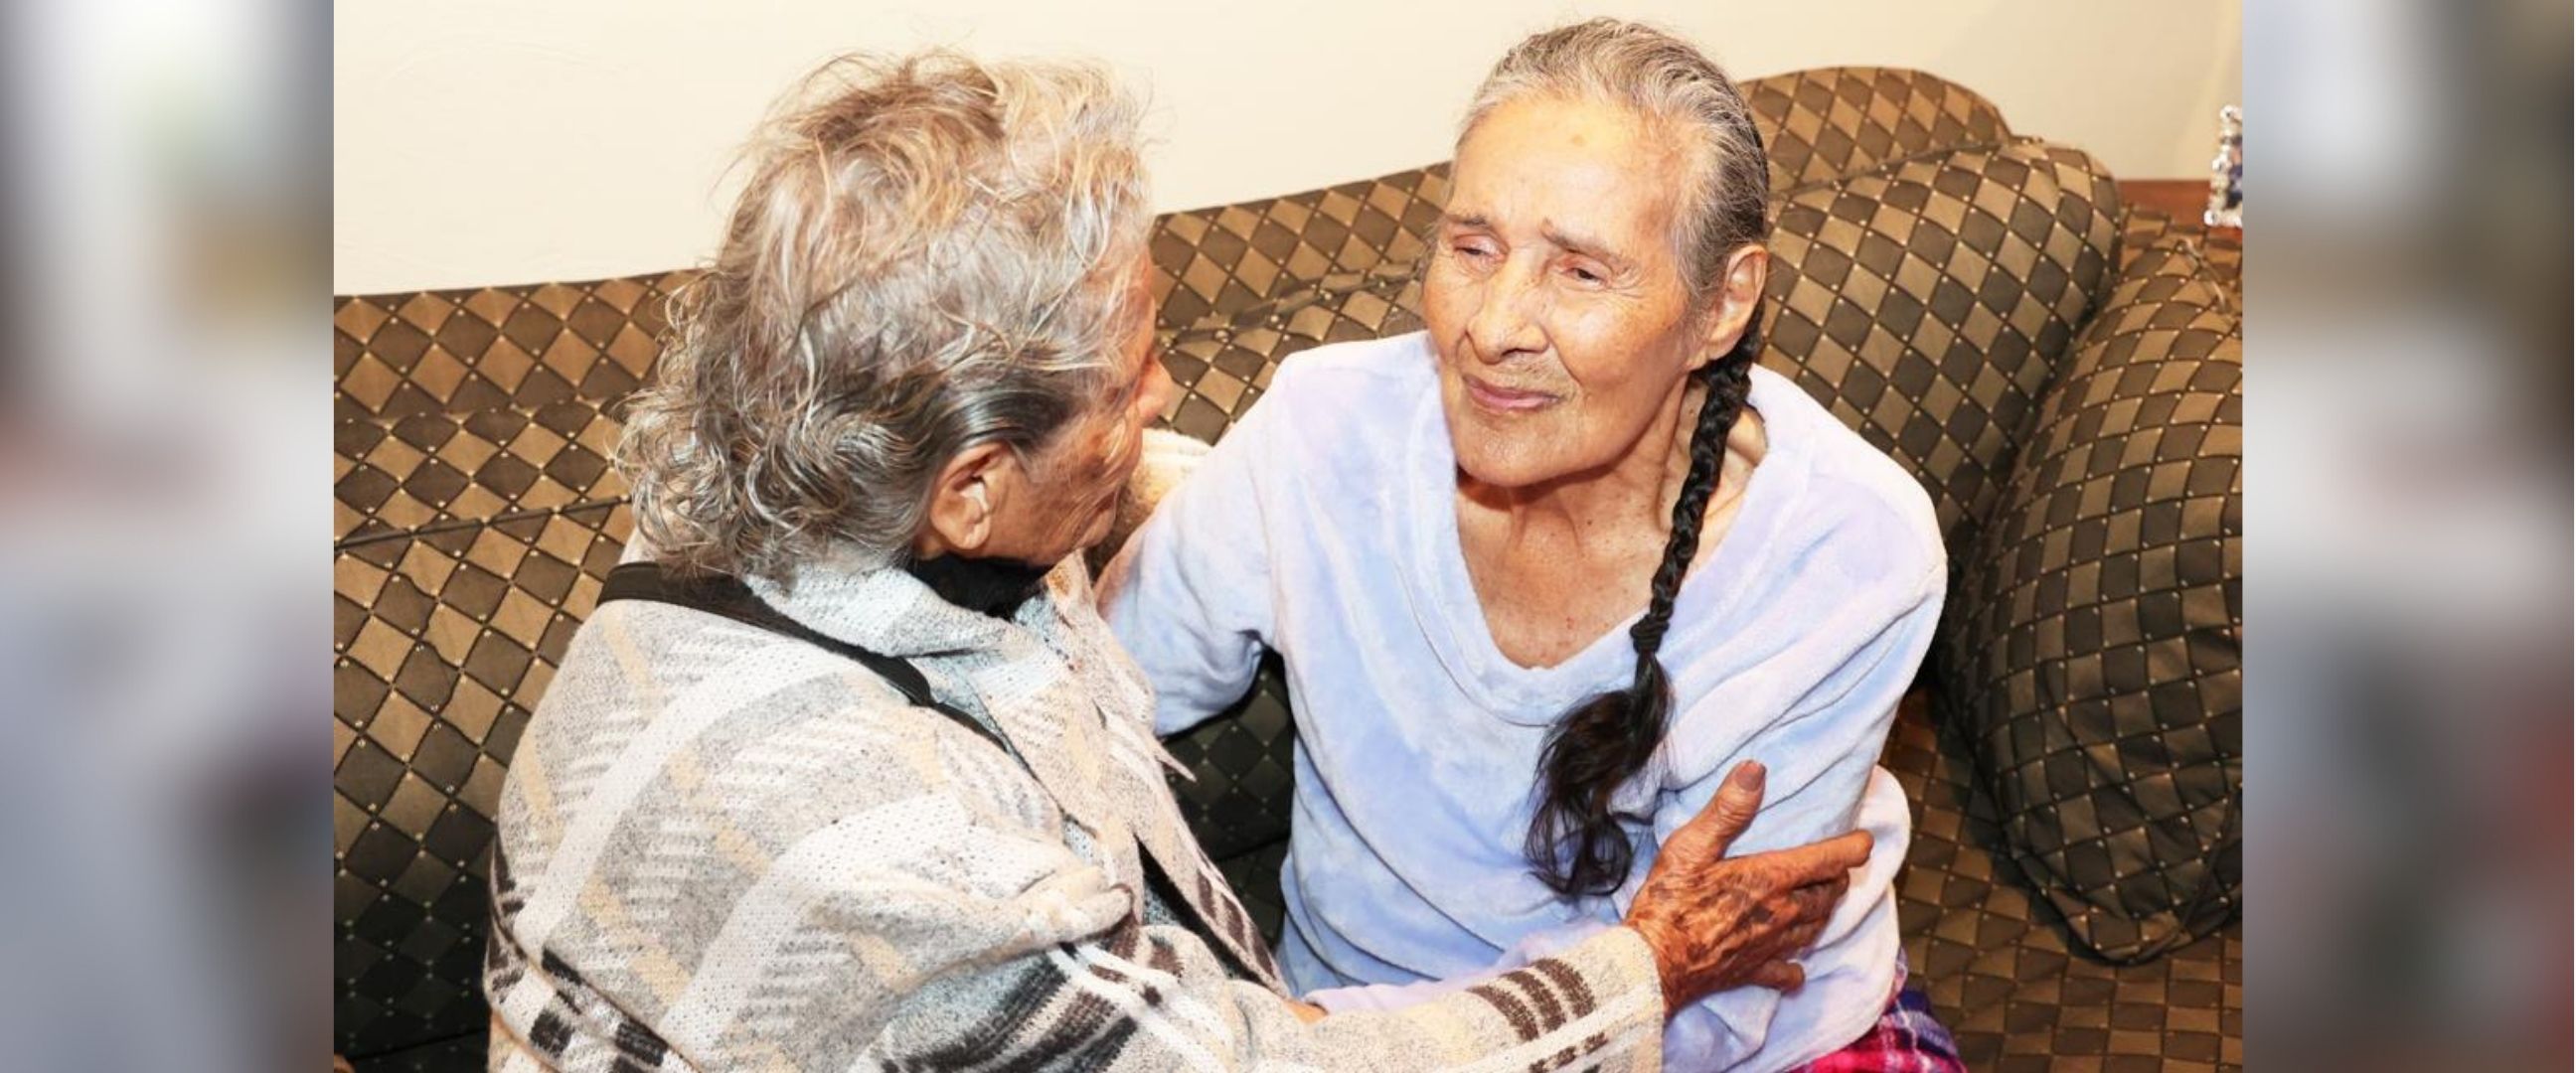 Terpisah 81 tahun, momen pertemuan saudara kembar di usia senja ini bikin haru